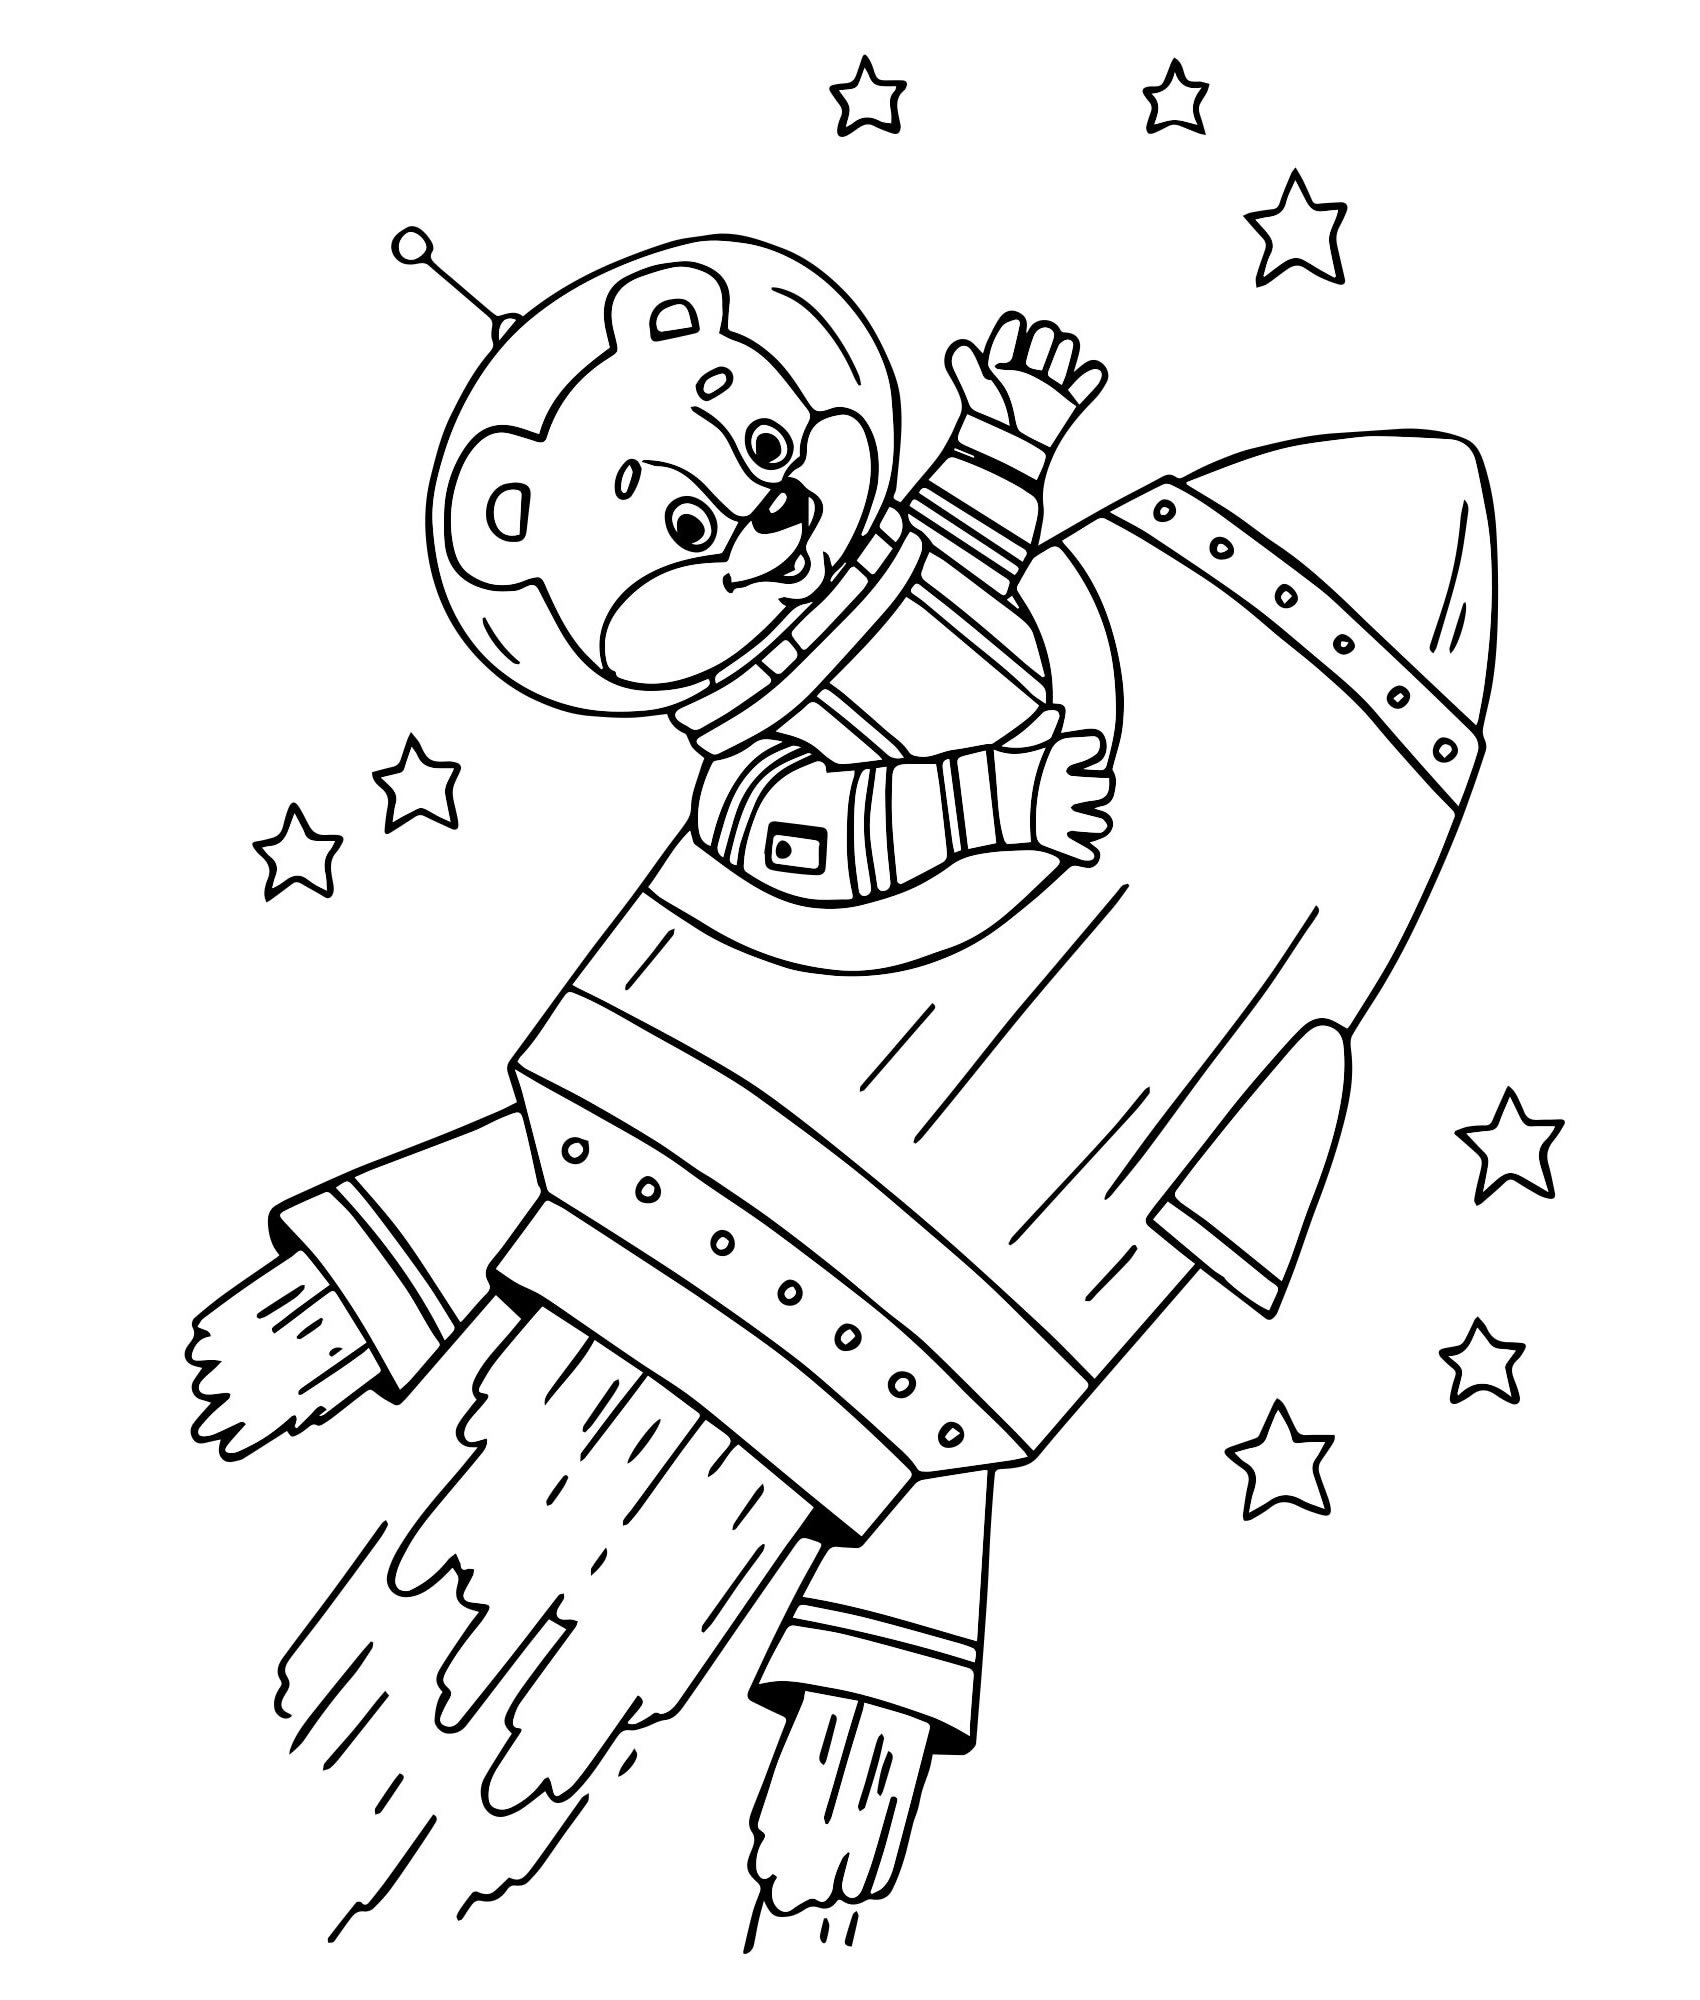 Детские раскраски ко дню космонавтики. Раскраска. В космосе. Космонавт раскраска для детей. Раскраски ко Дню космонавтики. Космос раскраска для детей.